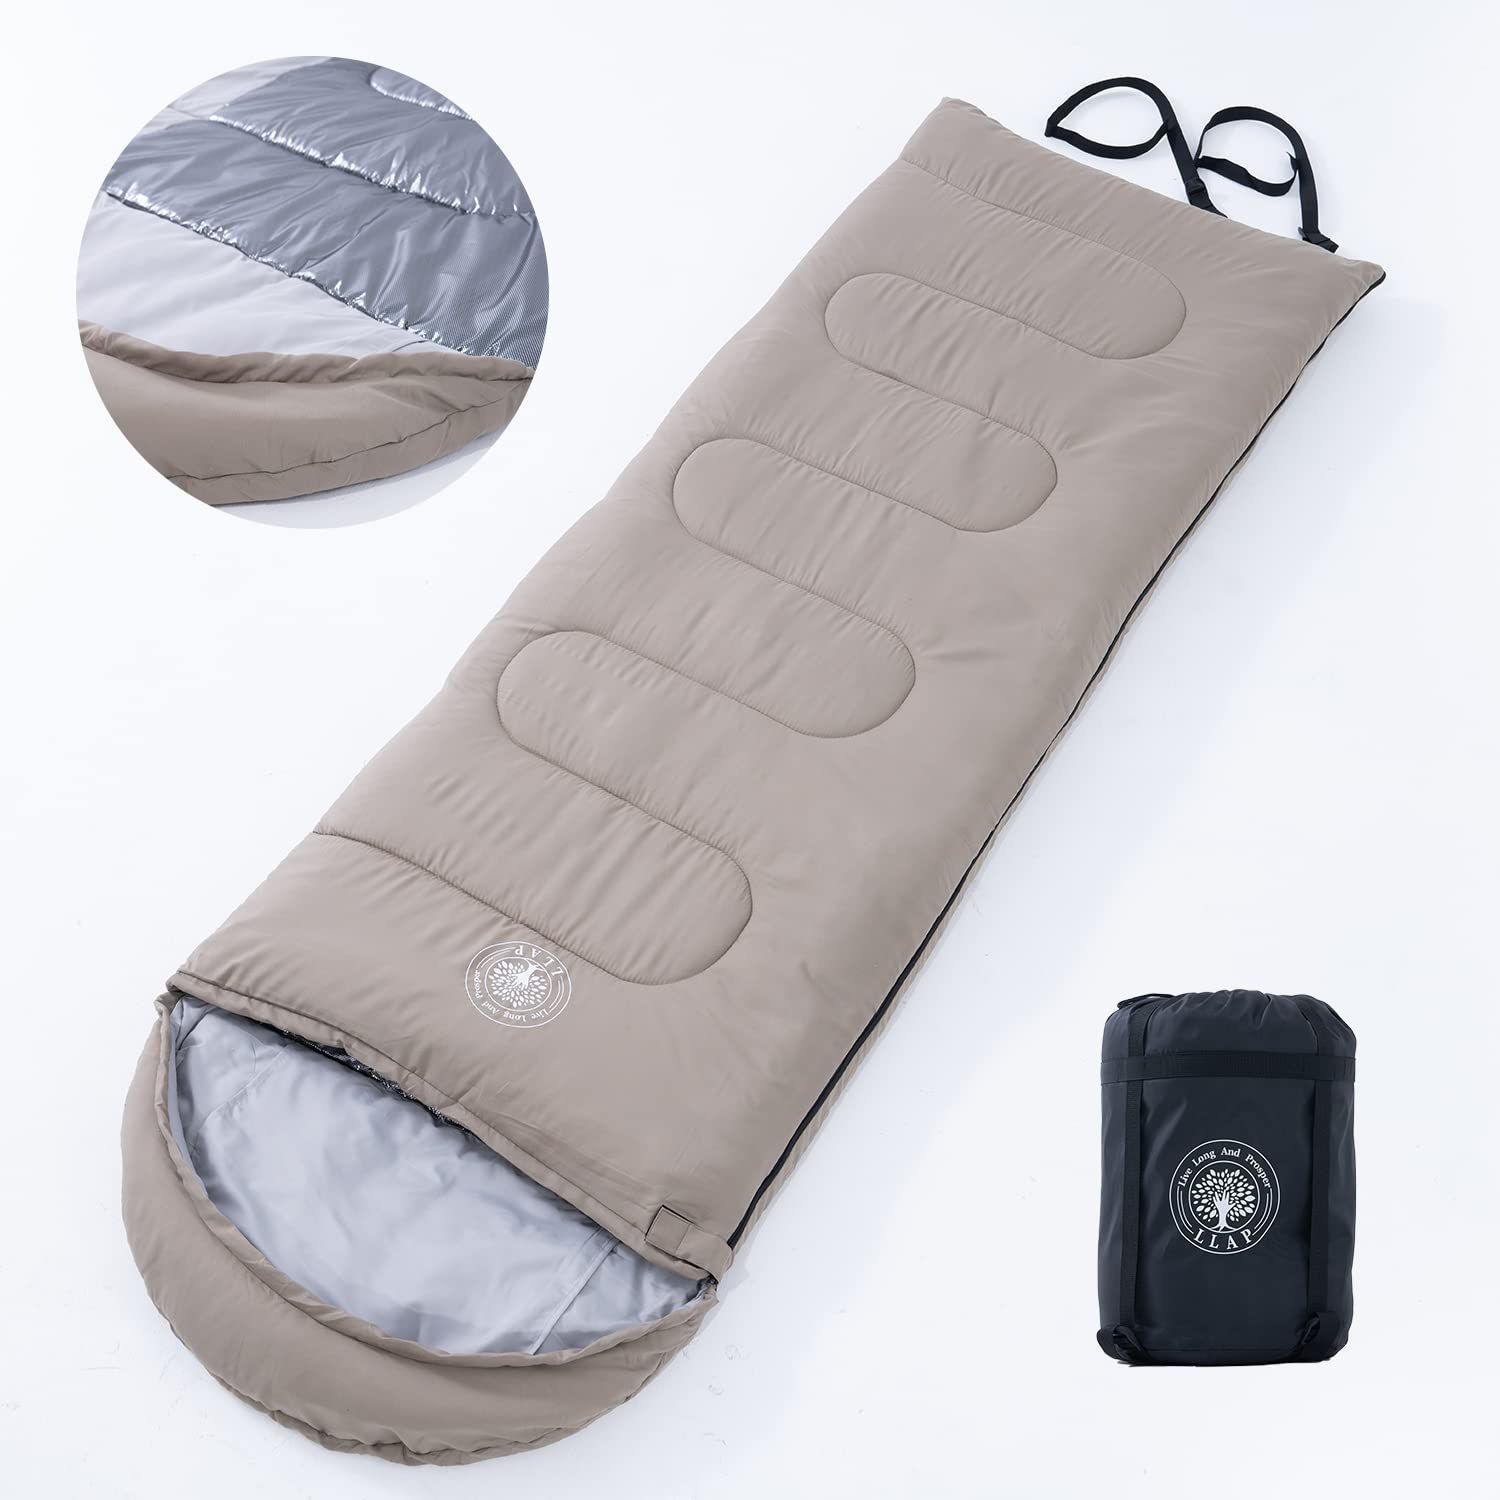 寝袋 封筒型 保温 -15度耐寒 防水 シュラフ アウトドア キャンプ 丸洗い